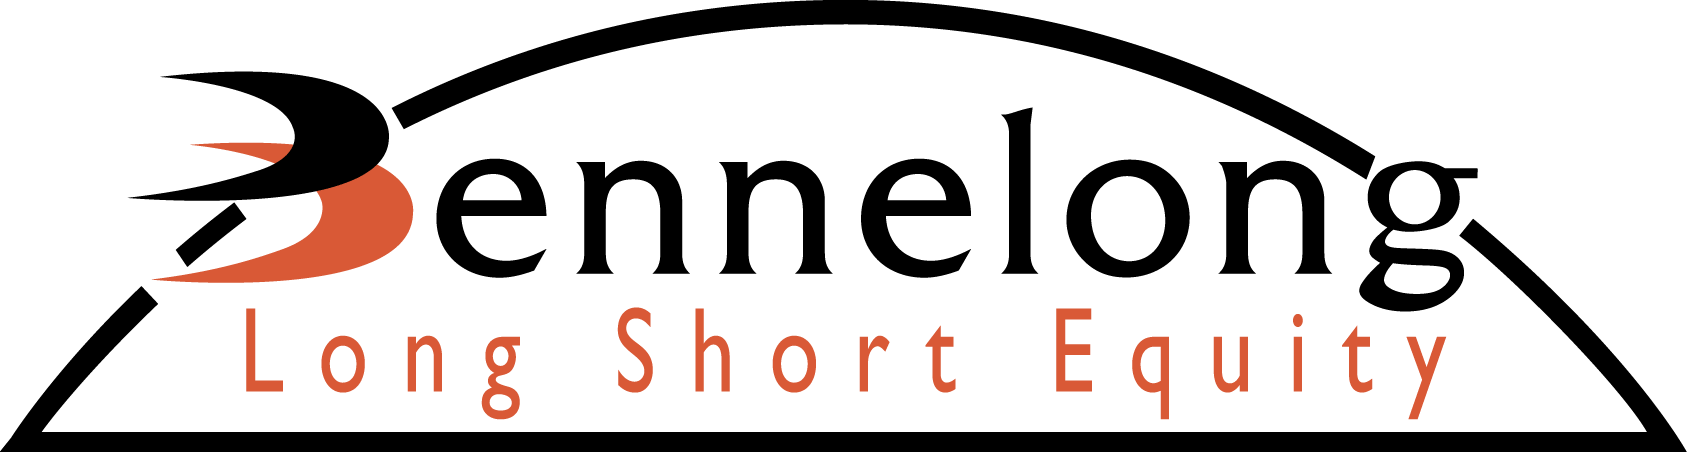 Bennelong Long Short Equity Management